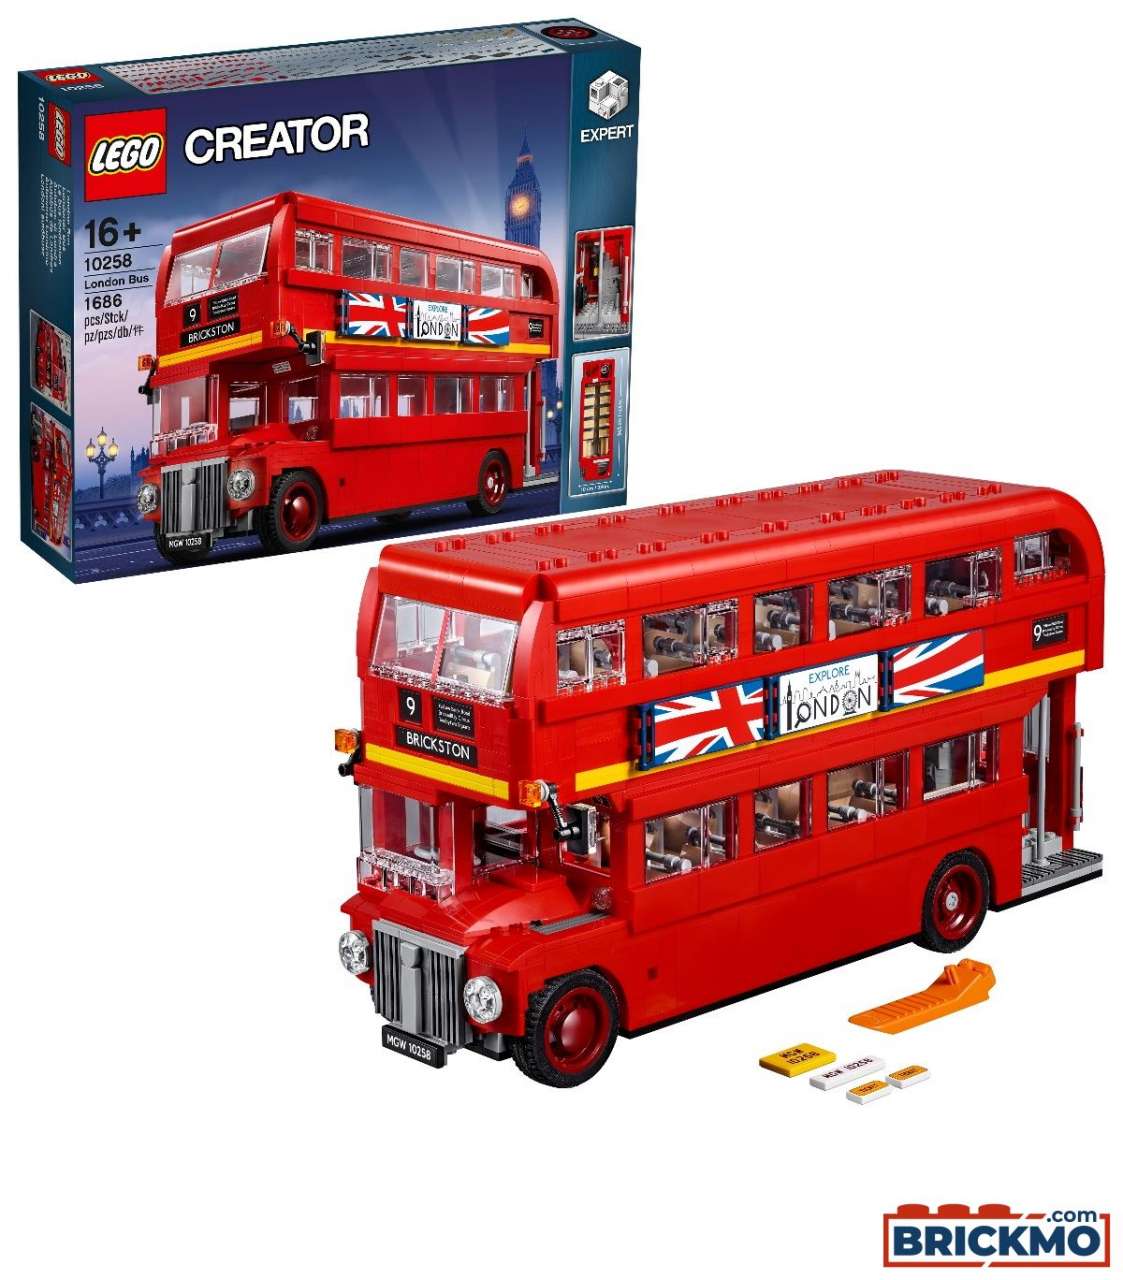 LEGO Creator 10258 Londoni autóbusz 10258